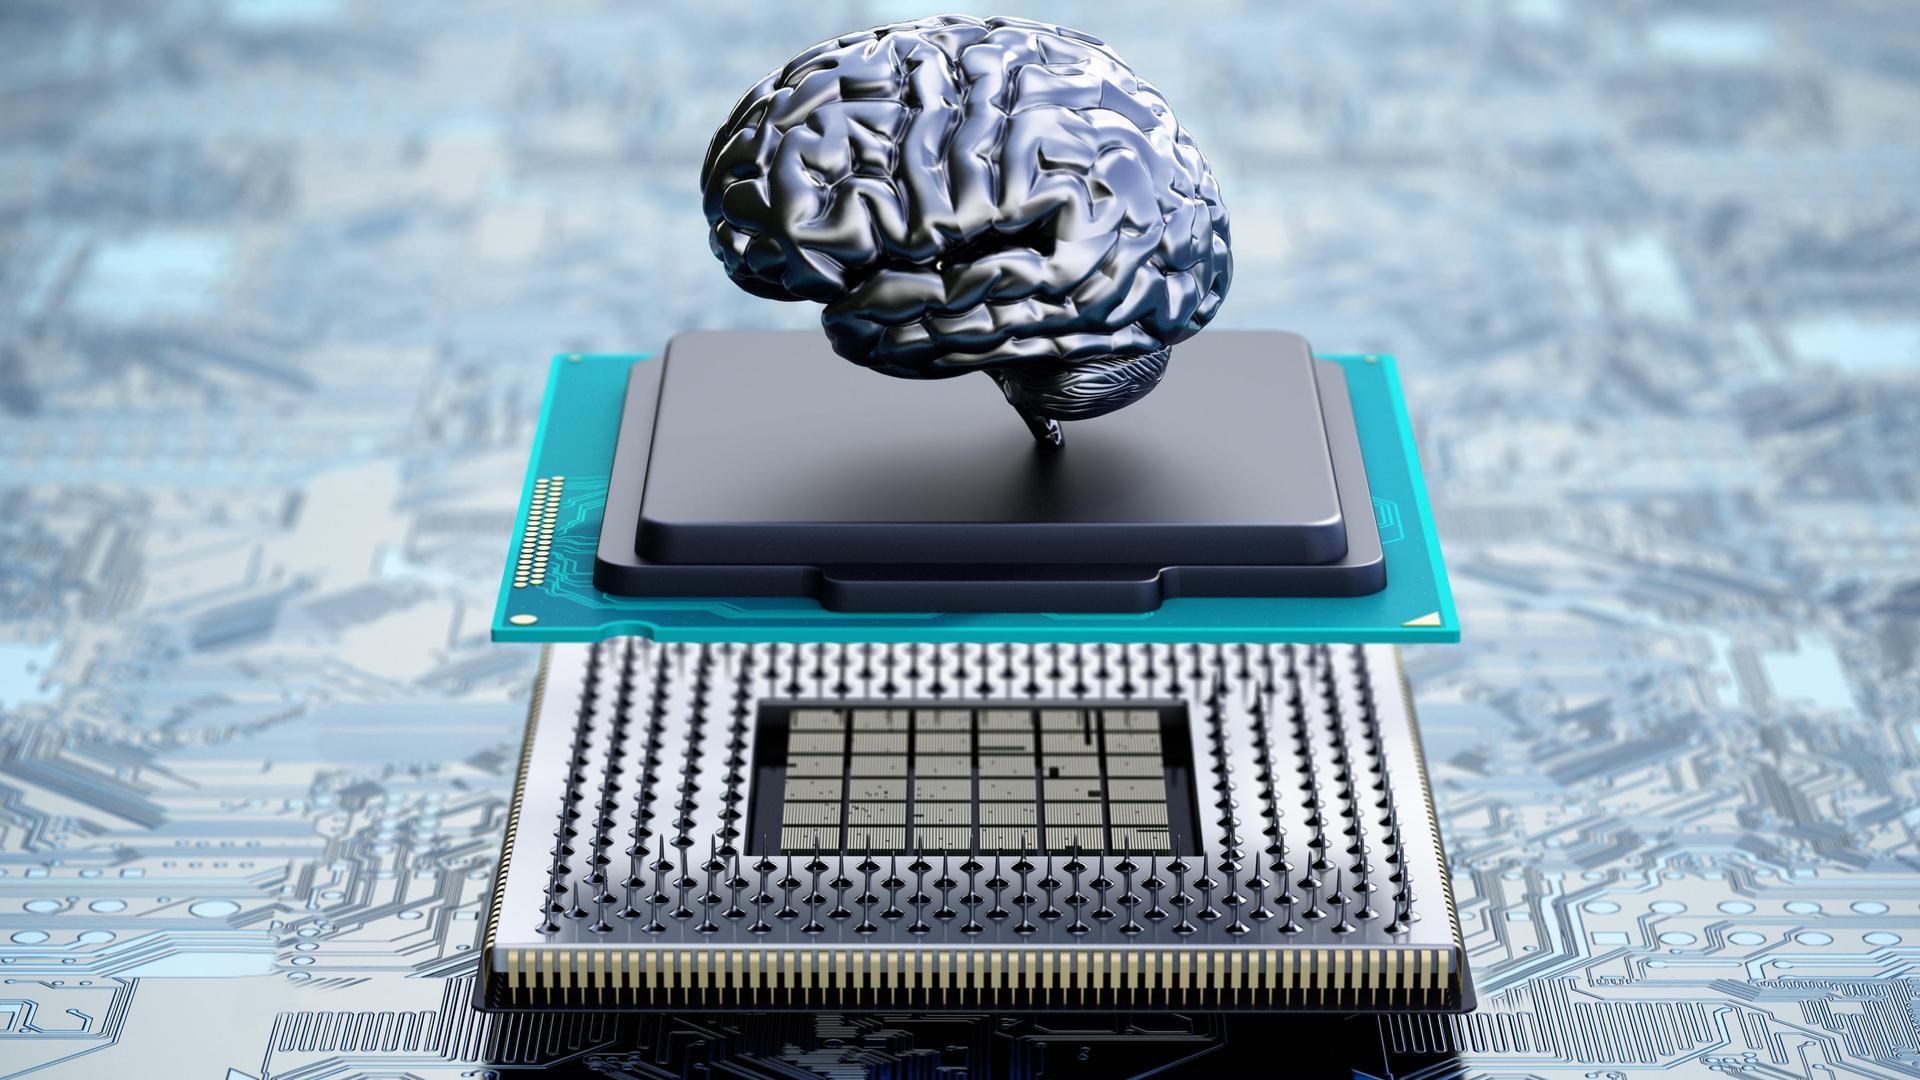 Auf einem Computerchip ist das winzige Modell eines menschlichen Gehirns befestigt.